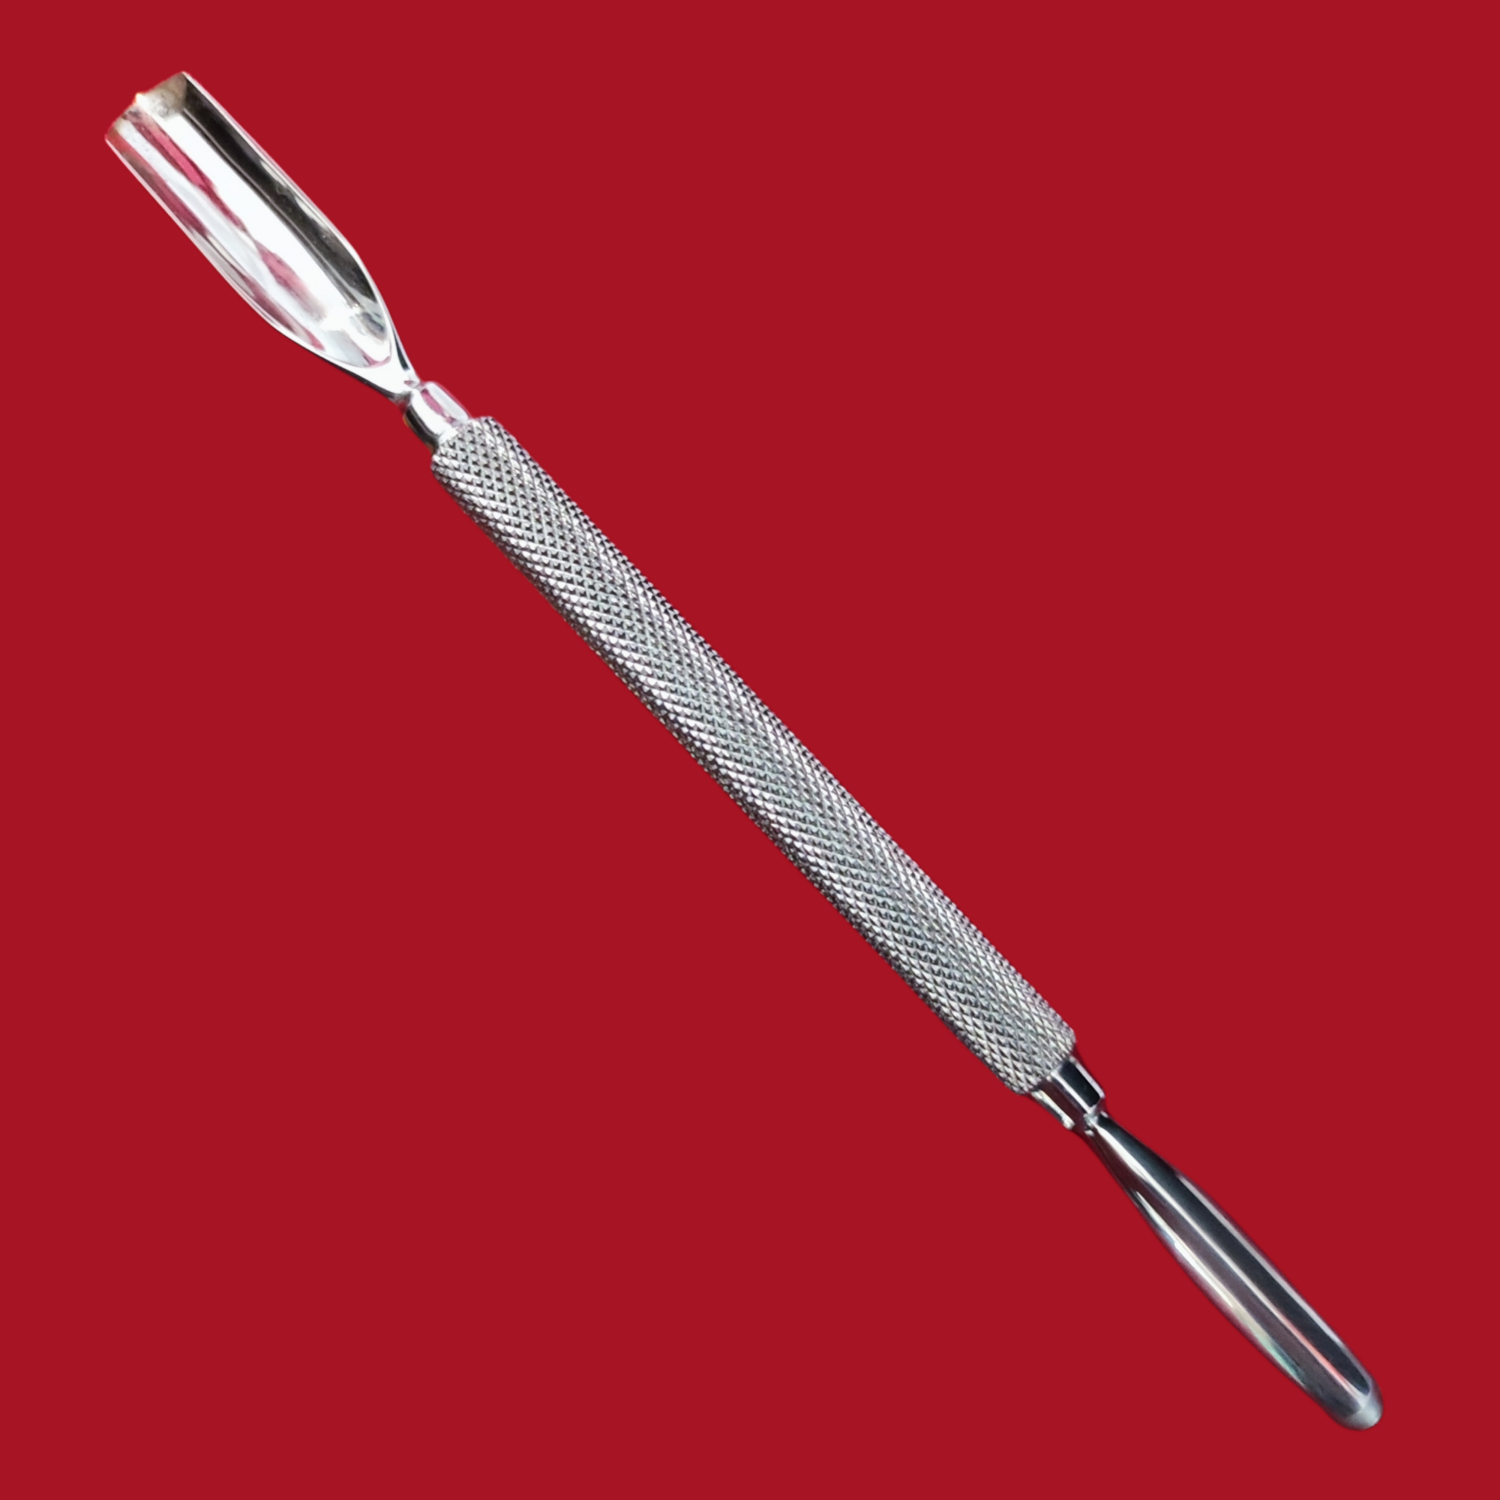 Doppia Sgorbia Professional in acciaio inox con 2 punte piccola/media lunghezza cm 14